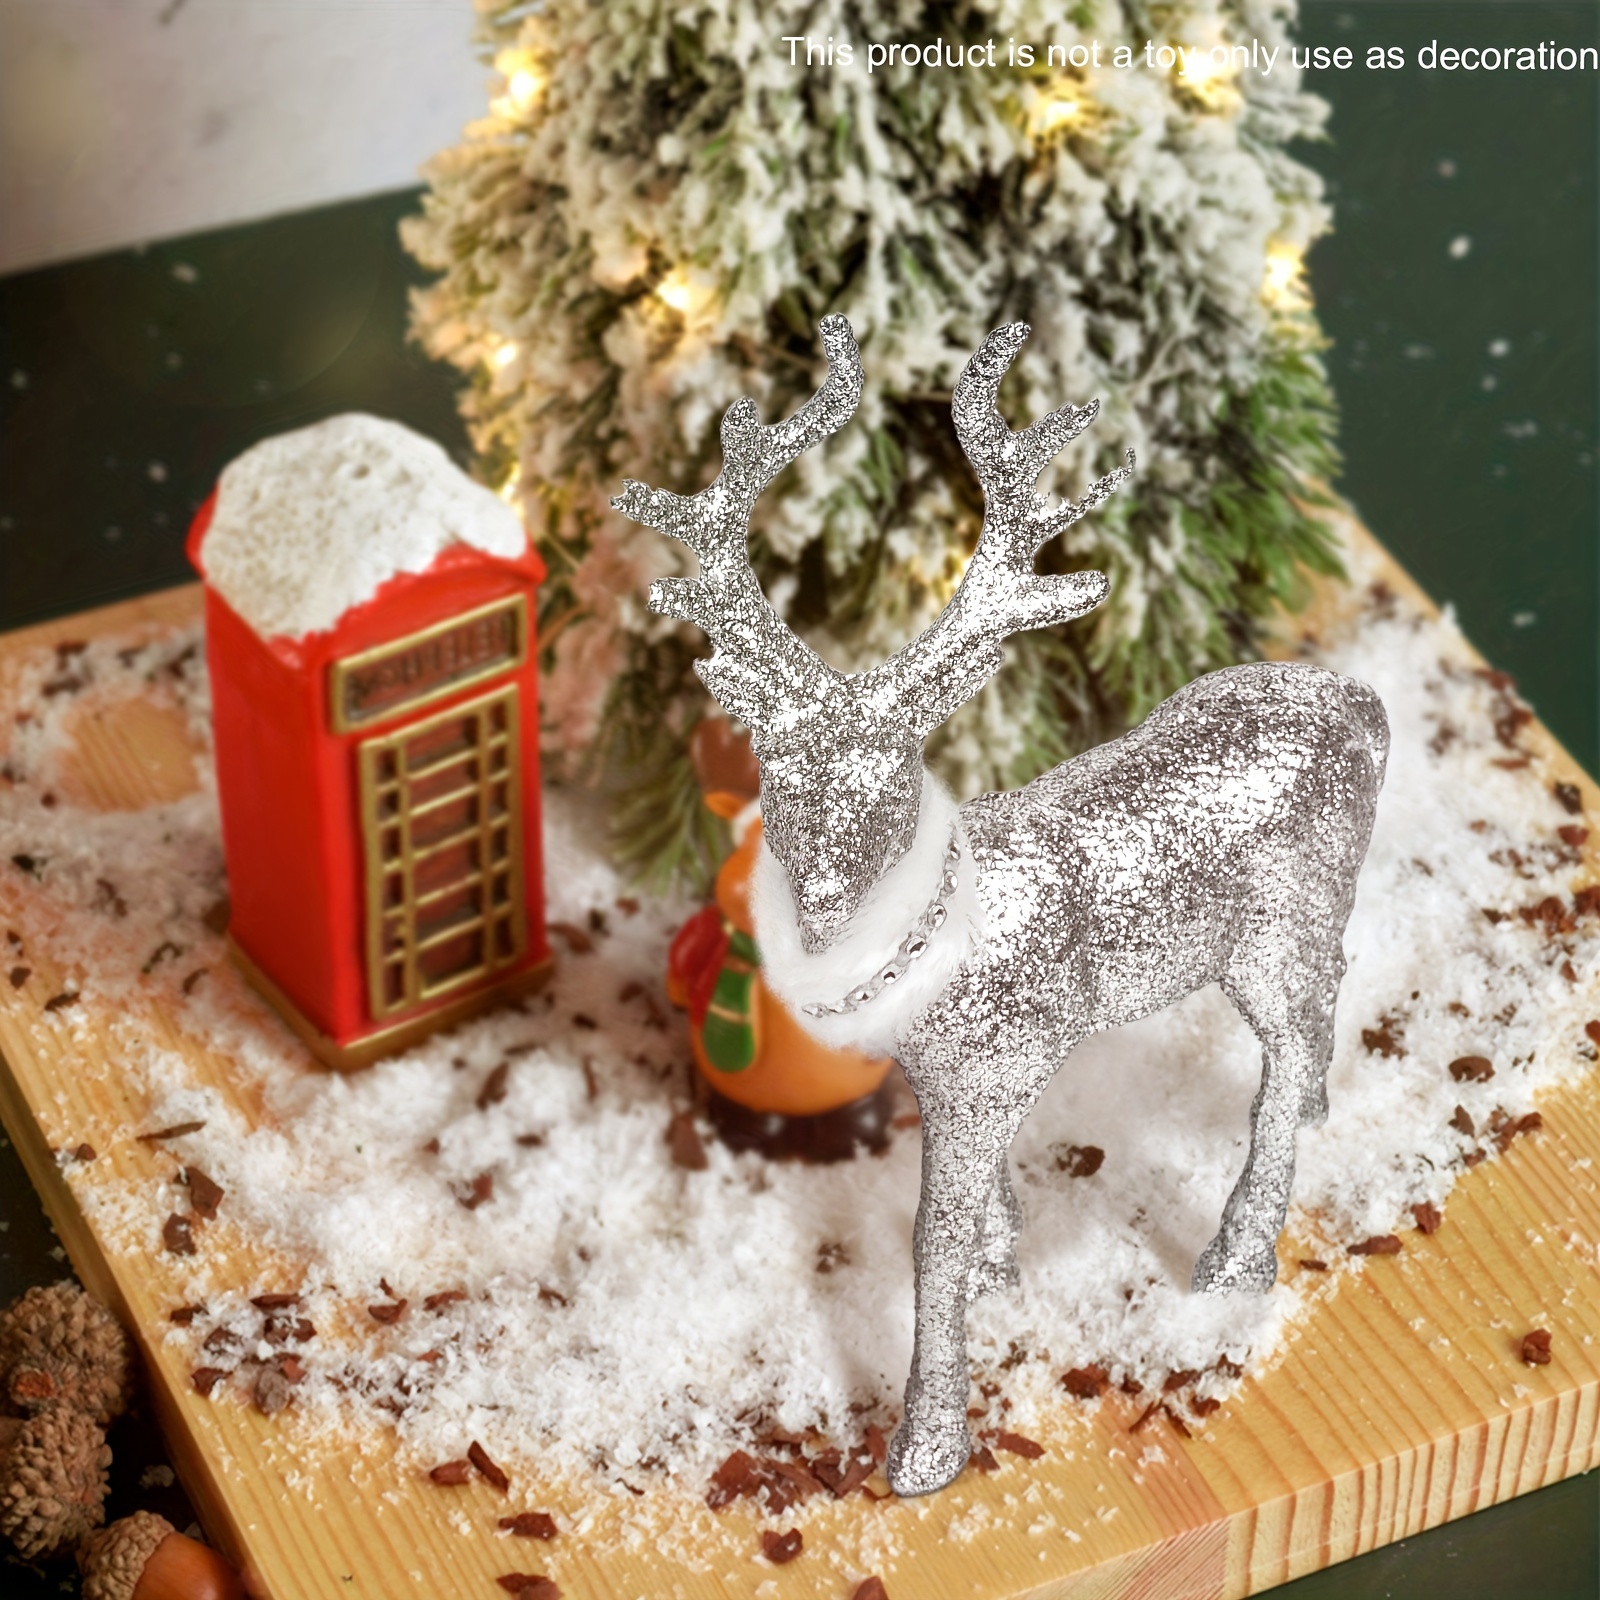 Décoration de Noël, cerf argent géant illuminé à DEL, blanc chaud, 86 po